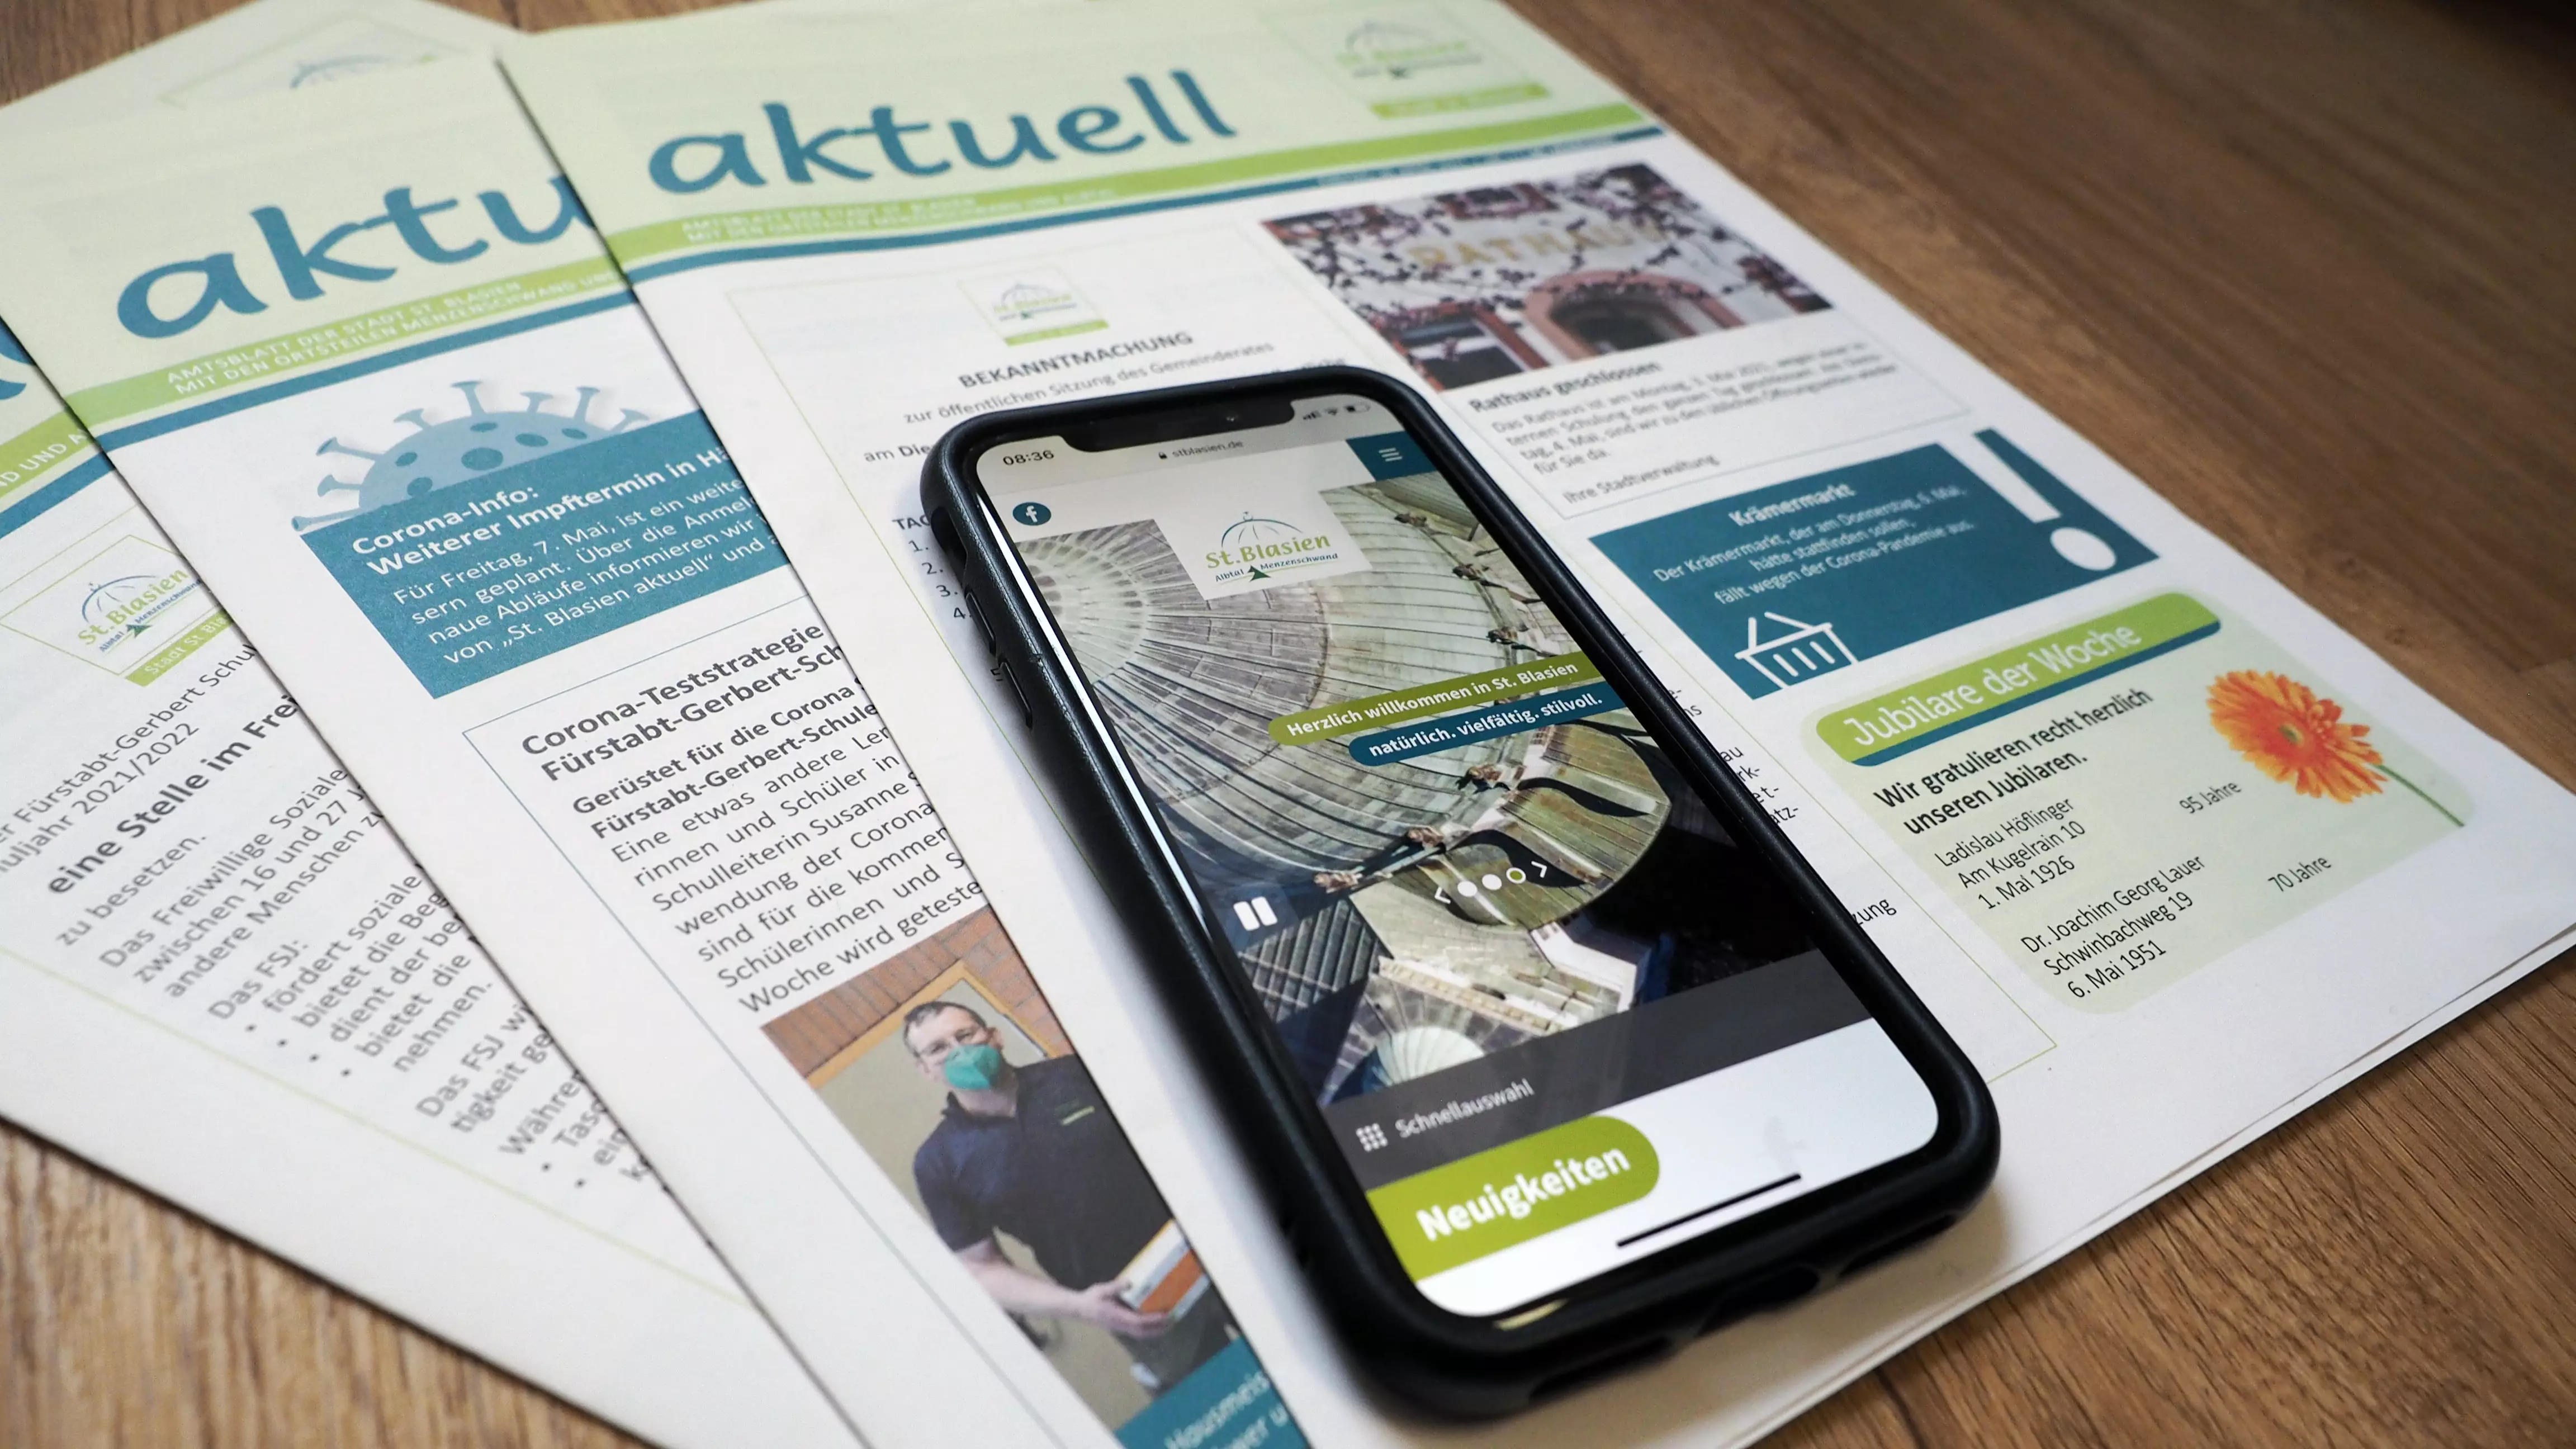 Bild zeigt verschiedene Ausgaben des Amtsblatts St. Blasien aktuell und ein Smartphone mit der mobilen Ansicht von www.stblasien.de